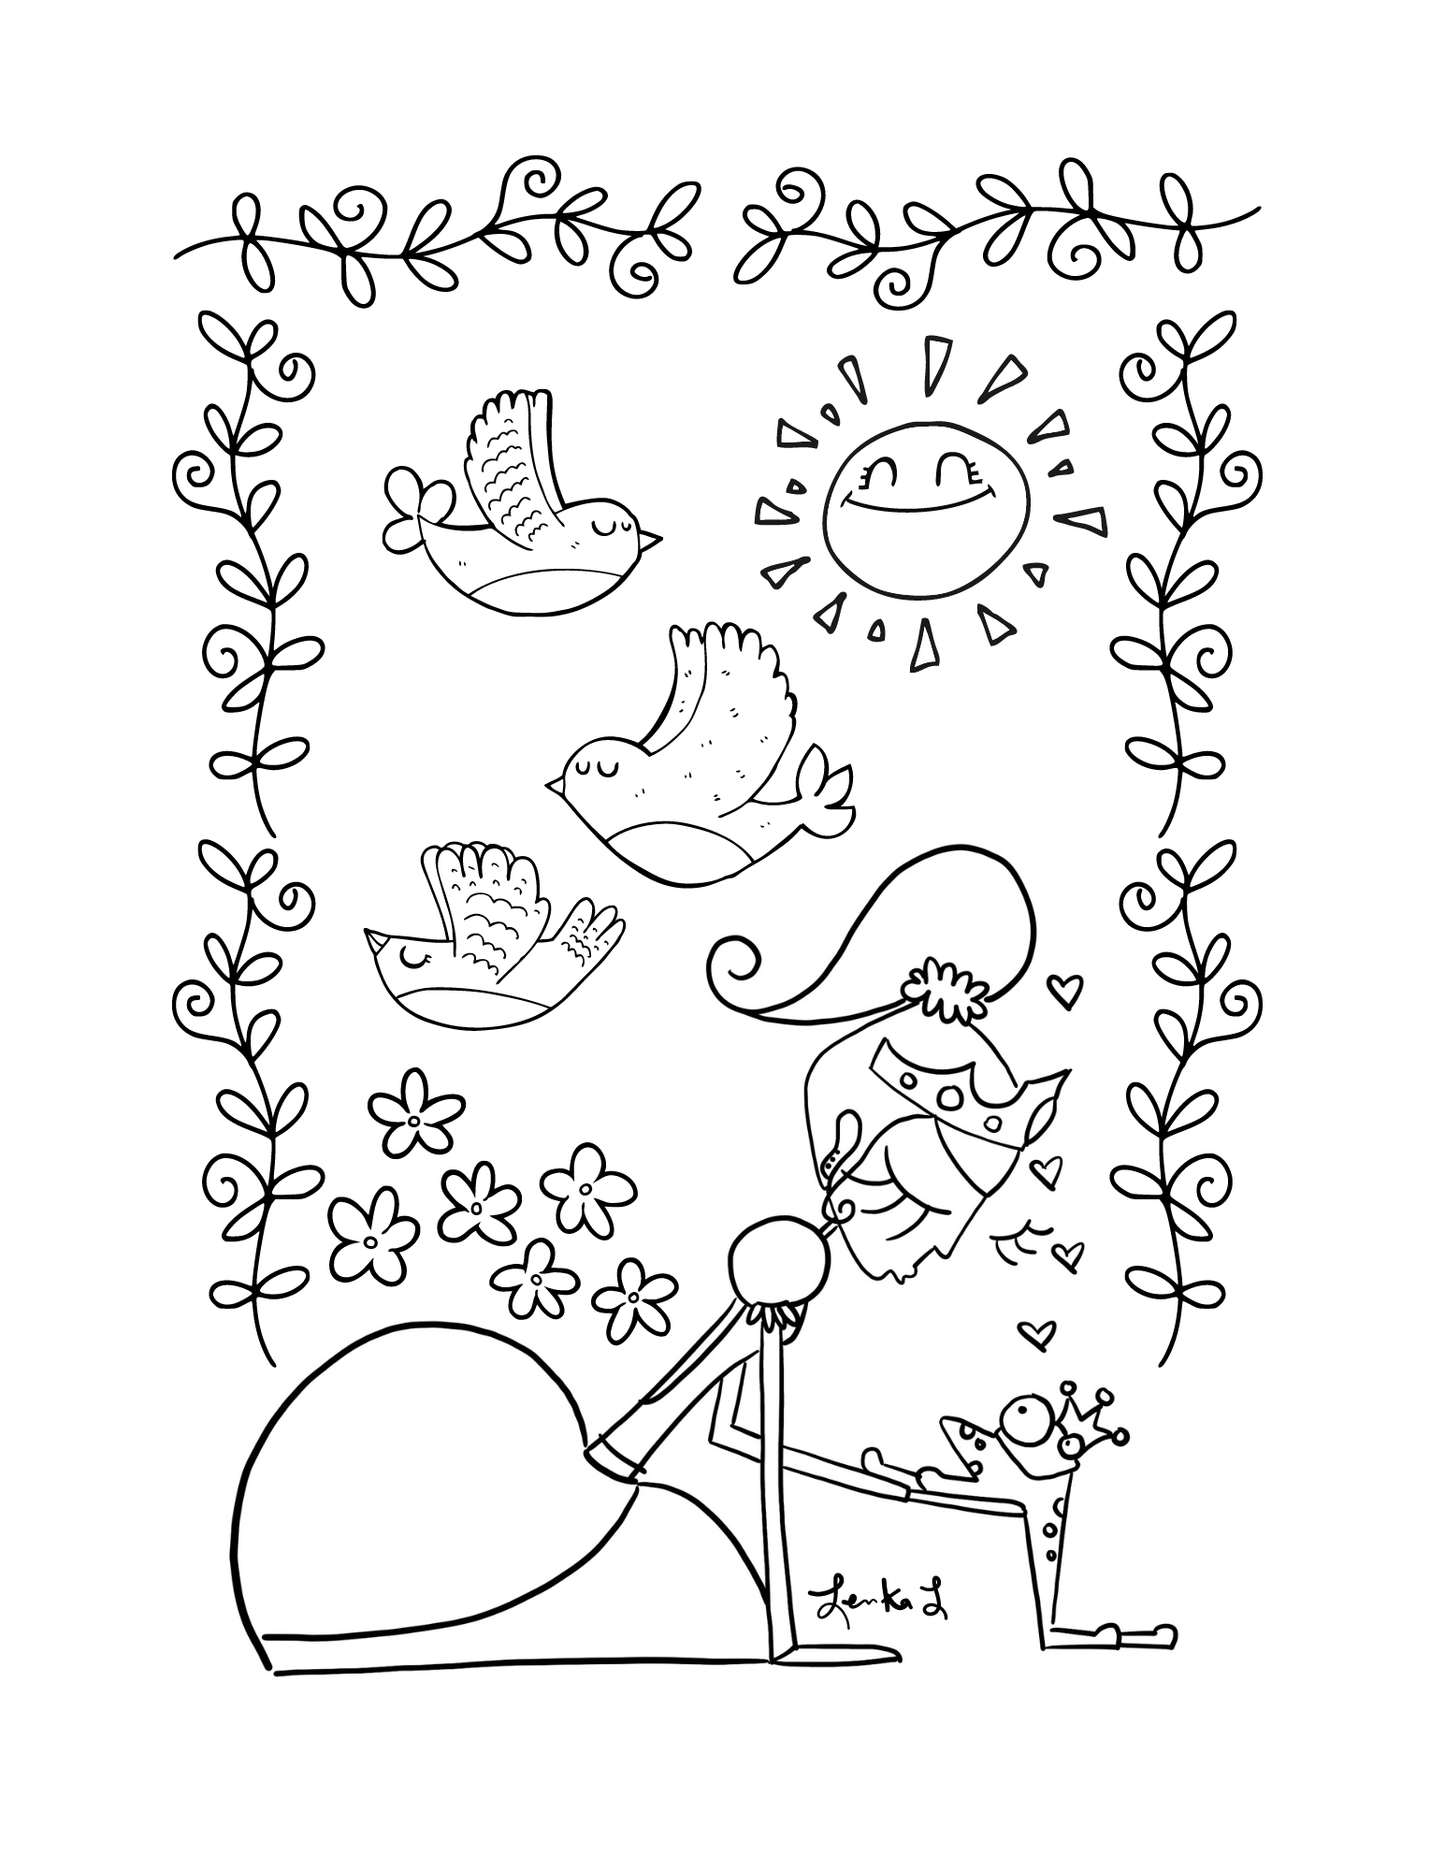 Dessin à colorier - Princesse Lenka et la grenouille par Lenka Lagueux - Couleur Pastel Dessins à colorierCouleur Pastel